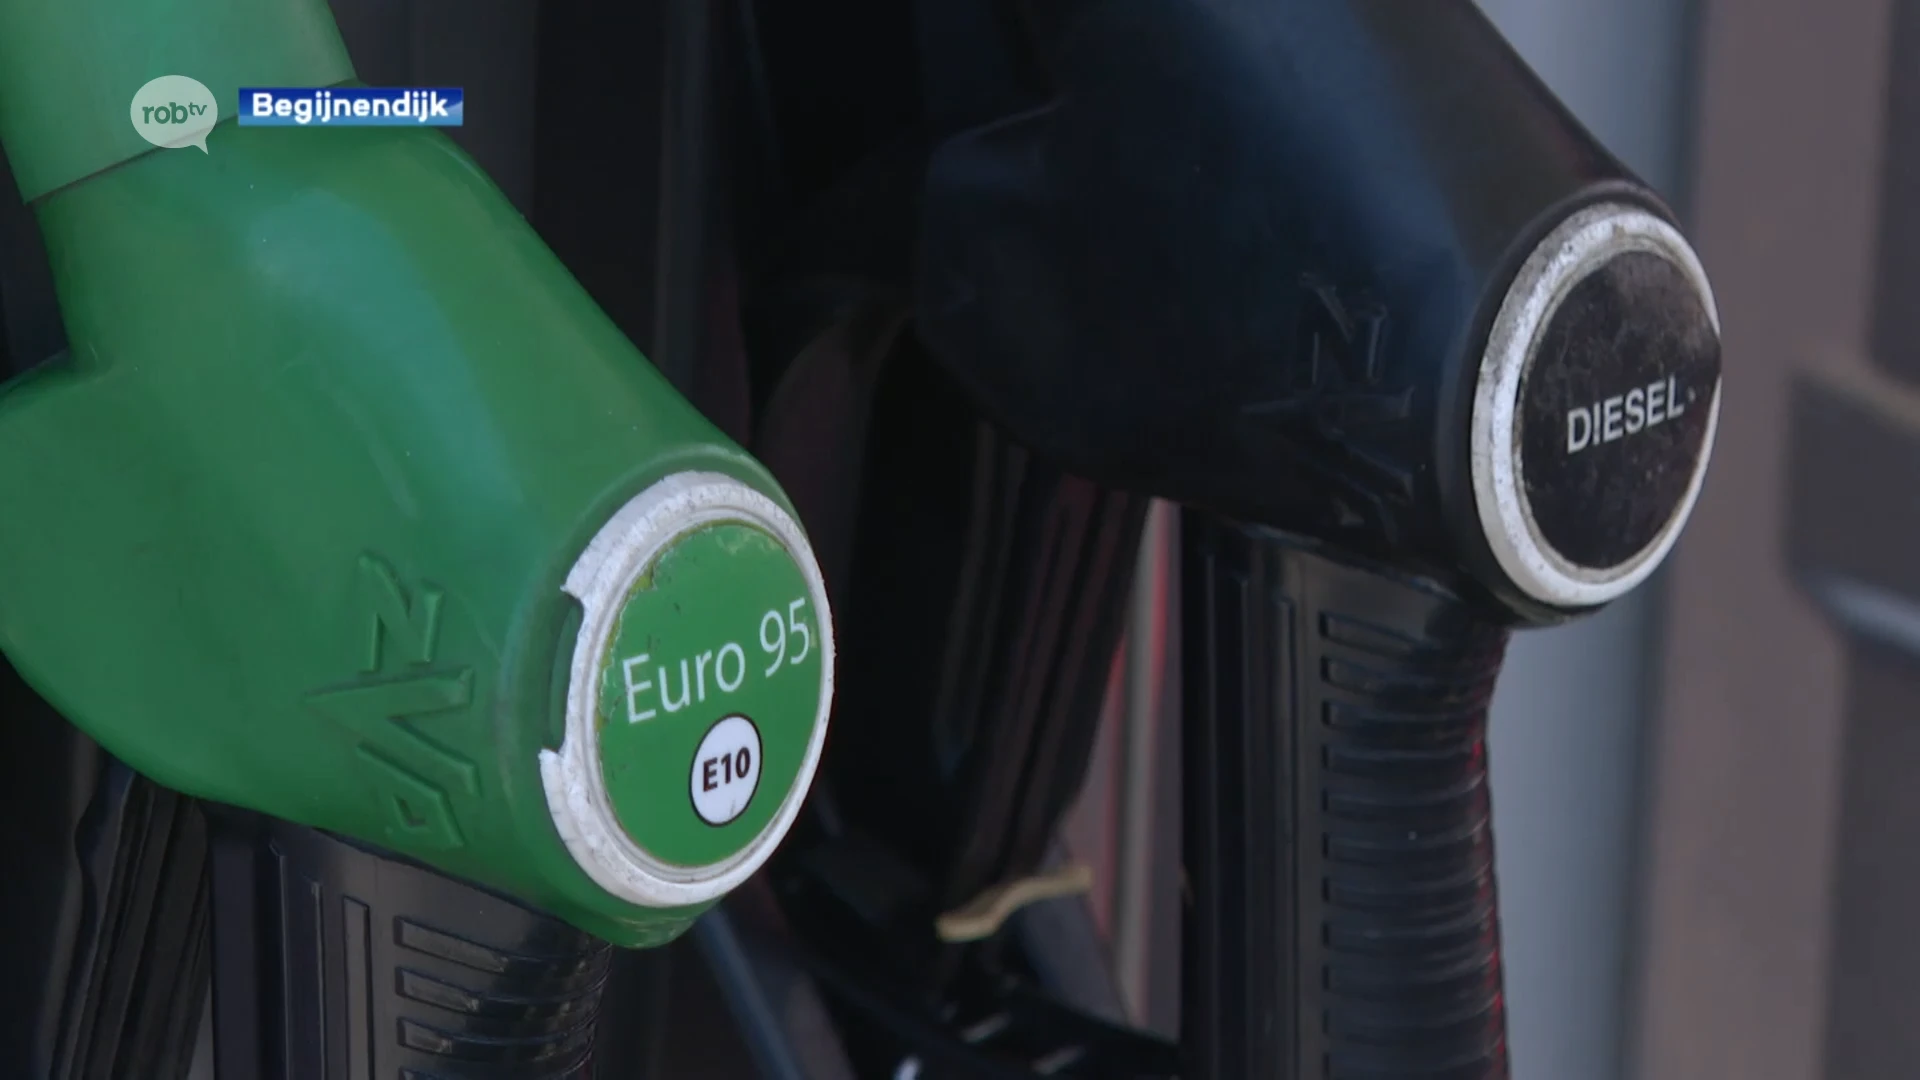 Benzinetank pompt waterachtige vloeistof in plaats van benzine: meerdere auto's beschadigd